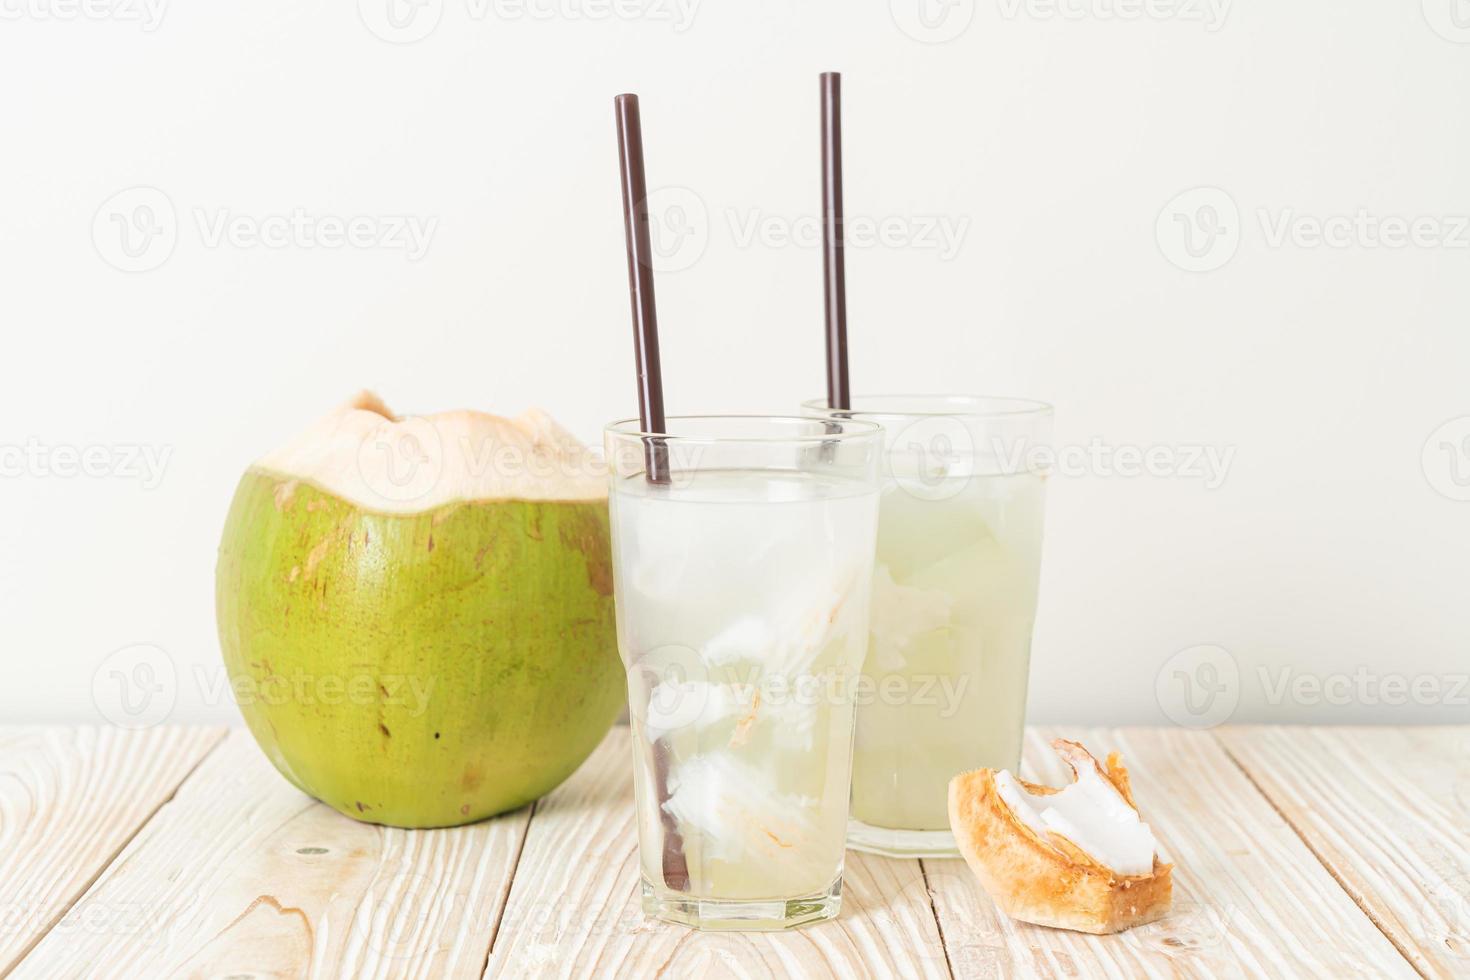 kokoswater of kokossap in glas met ijsblokjes foto